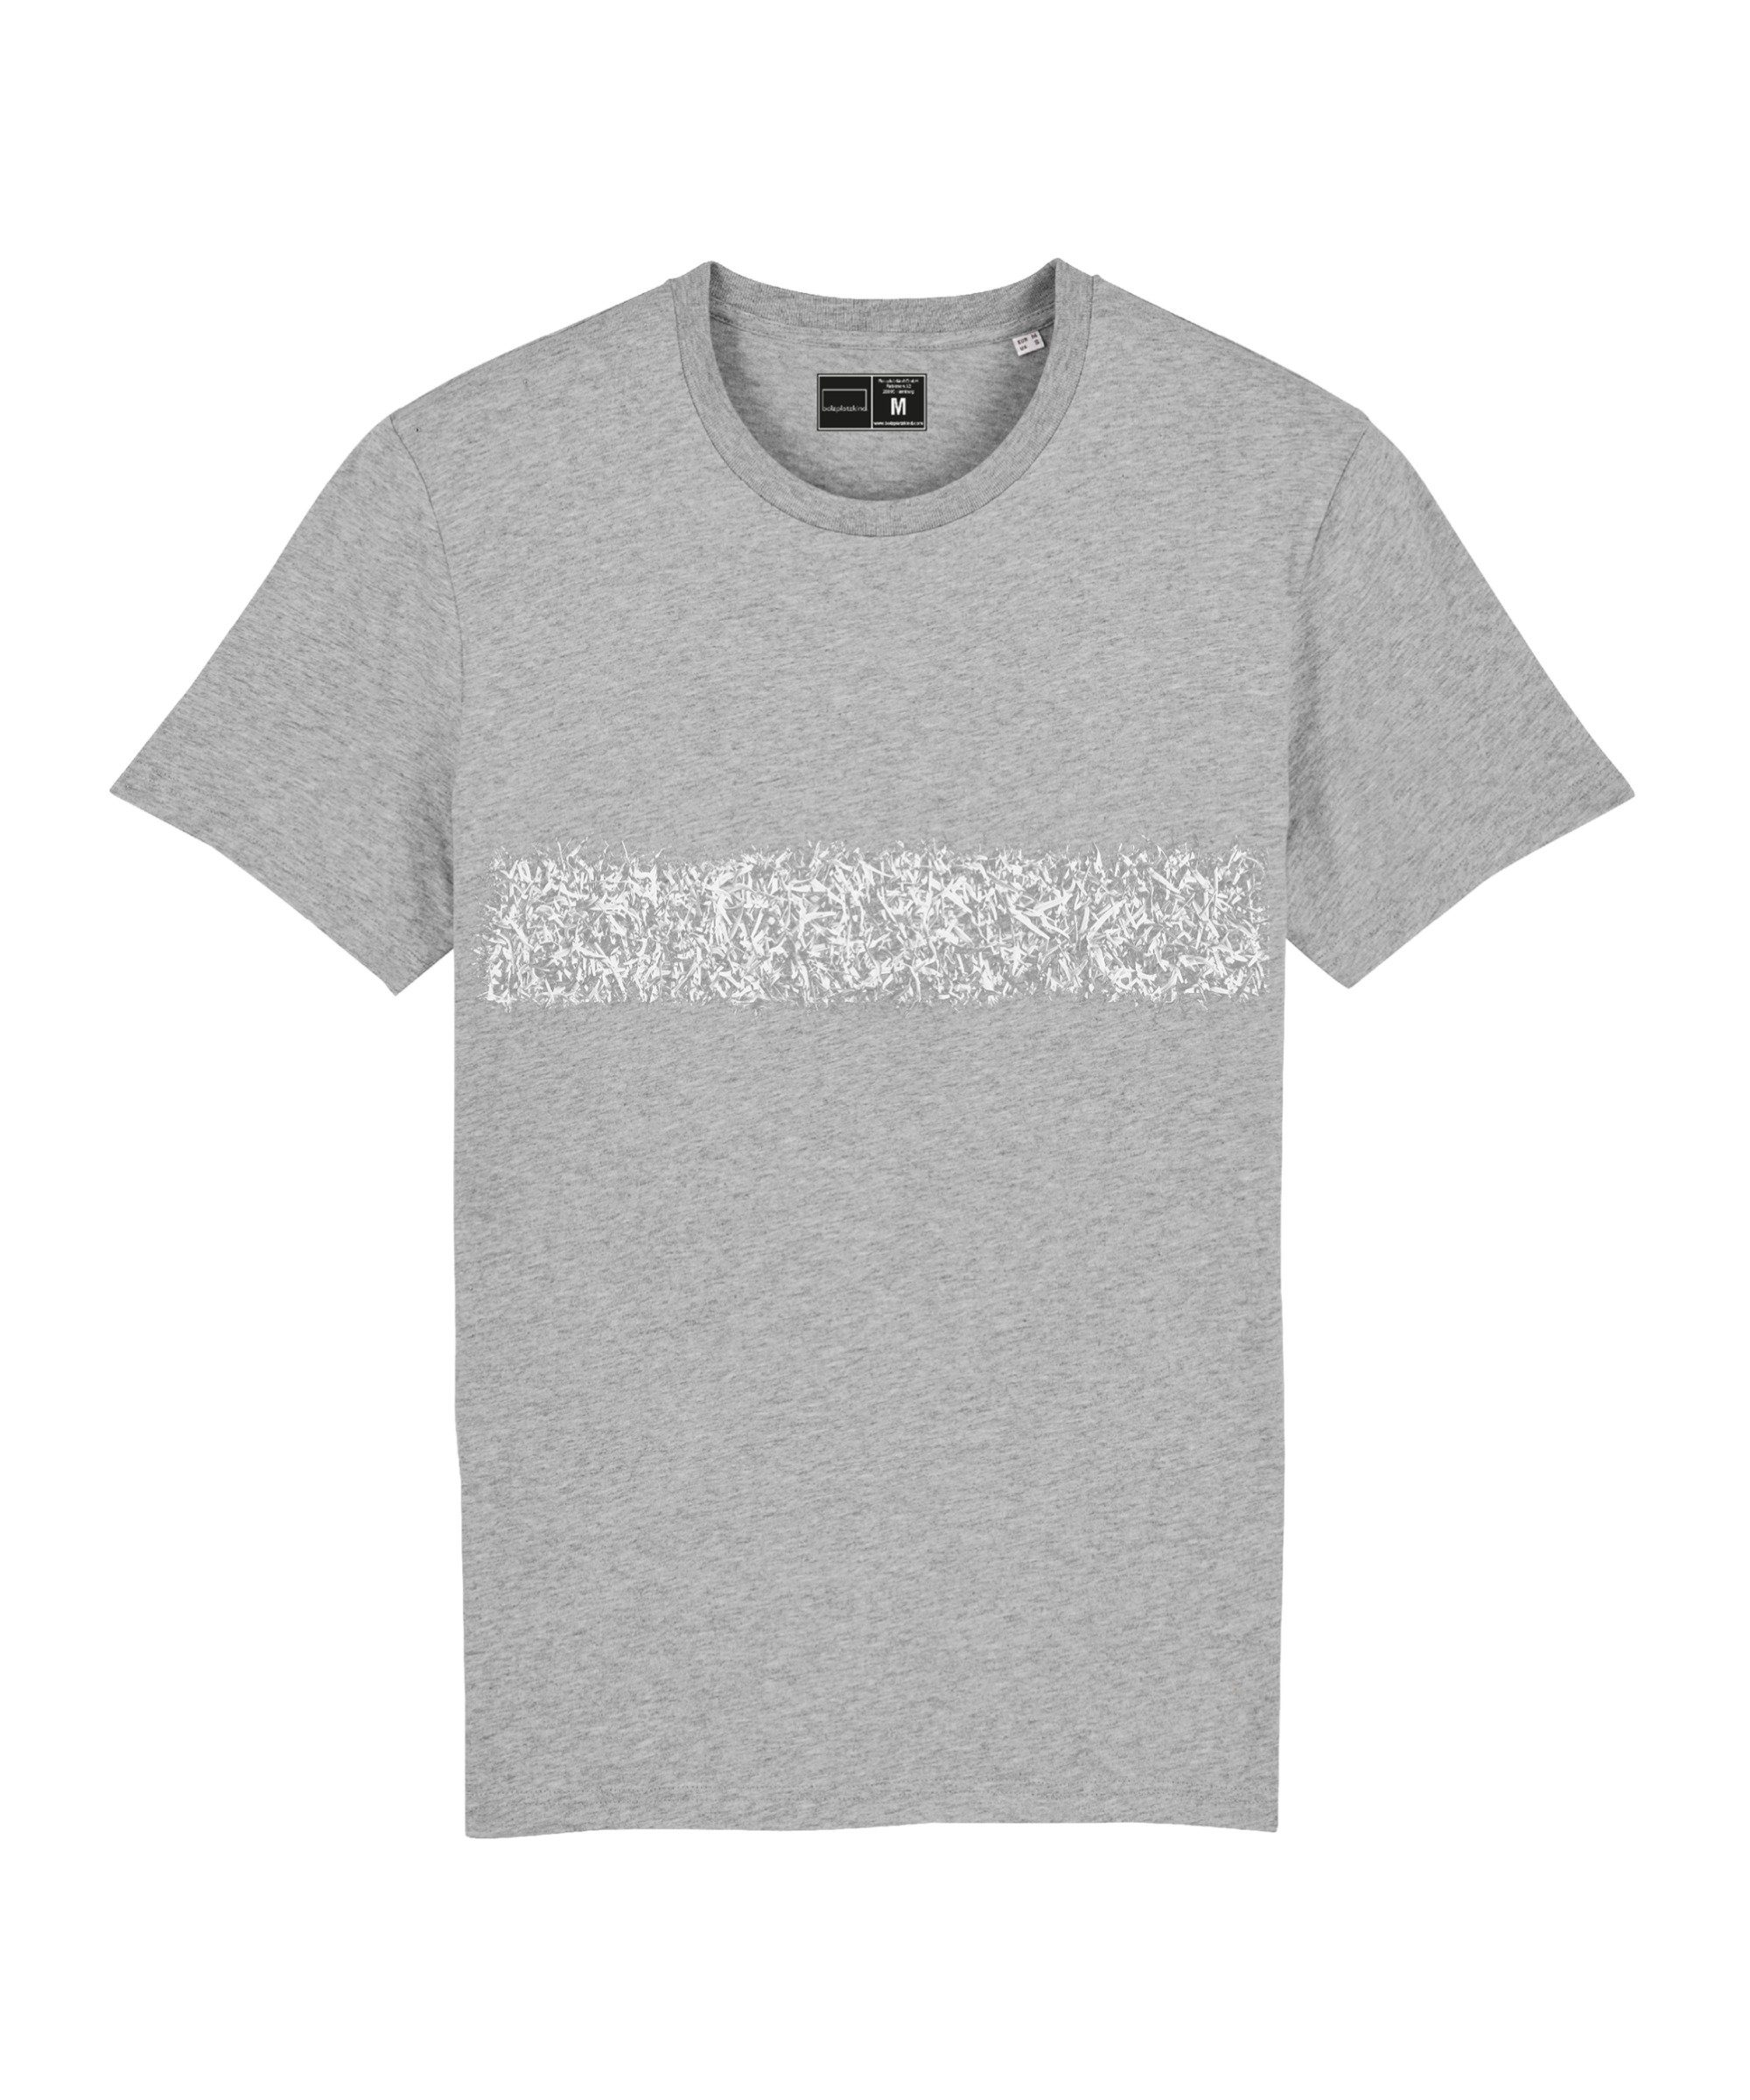 "Line-Up" T-Shirt Bolzplatzkind grau Produkt T-Shirt Nachhaltiges